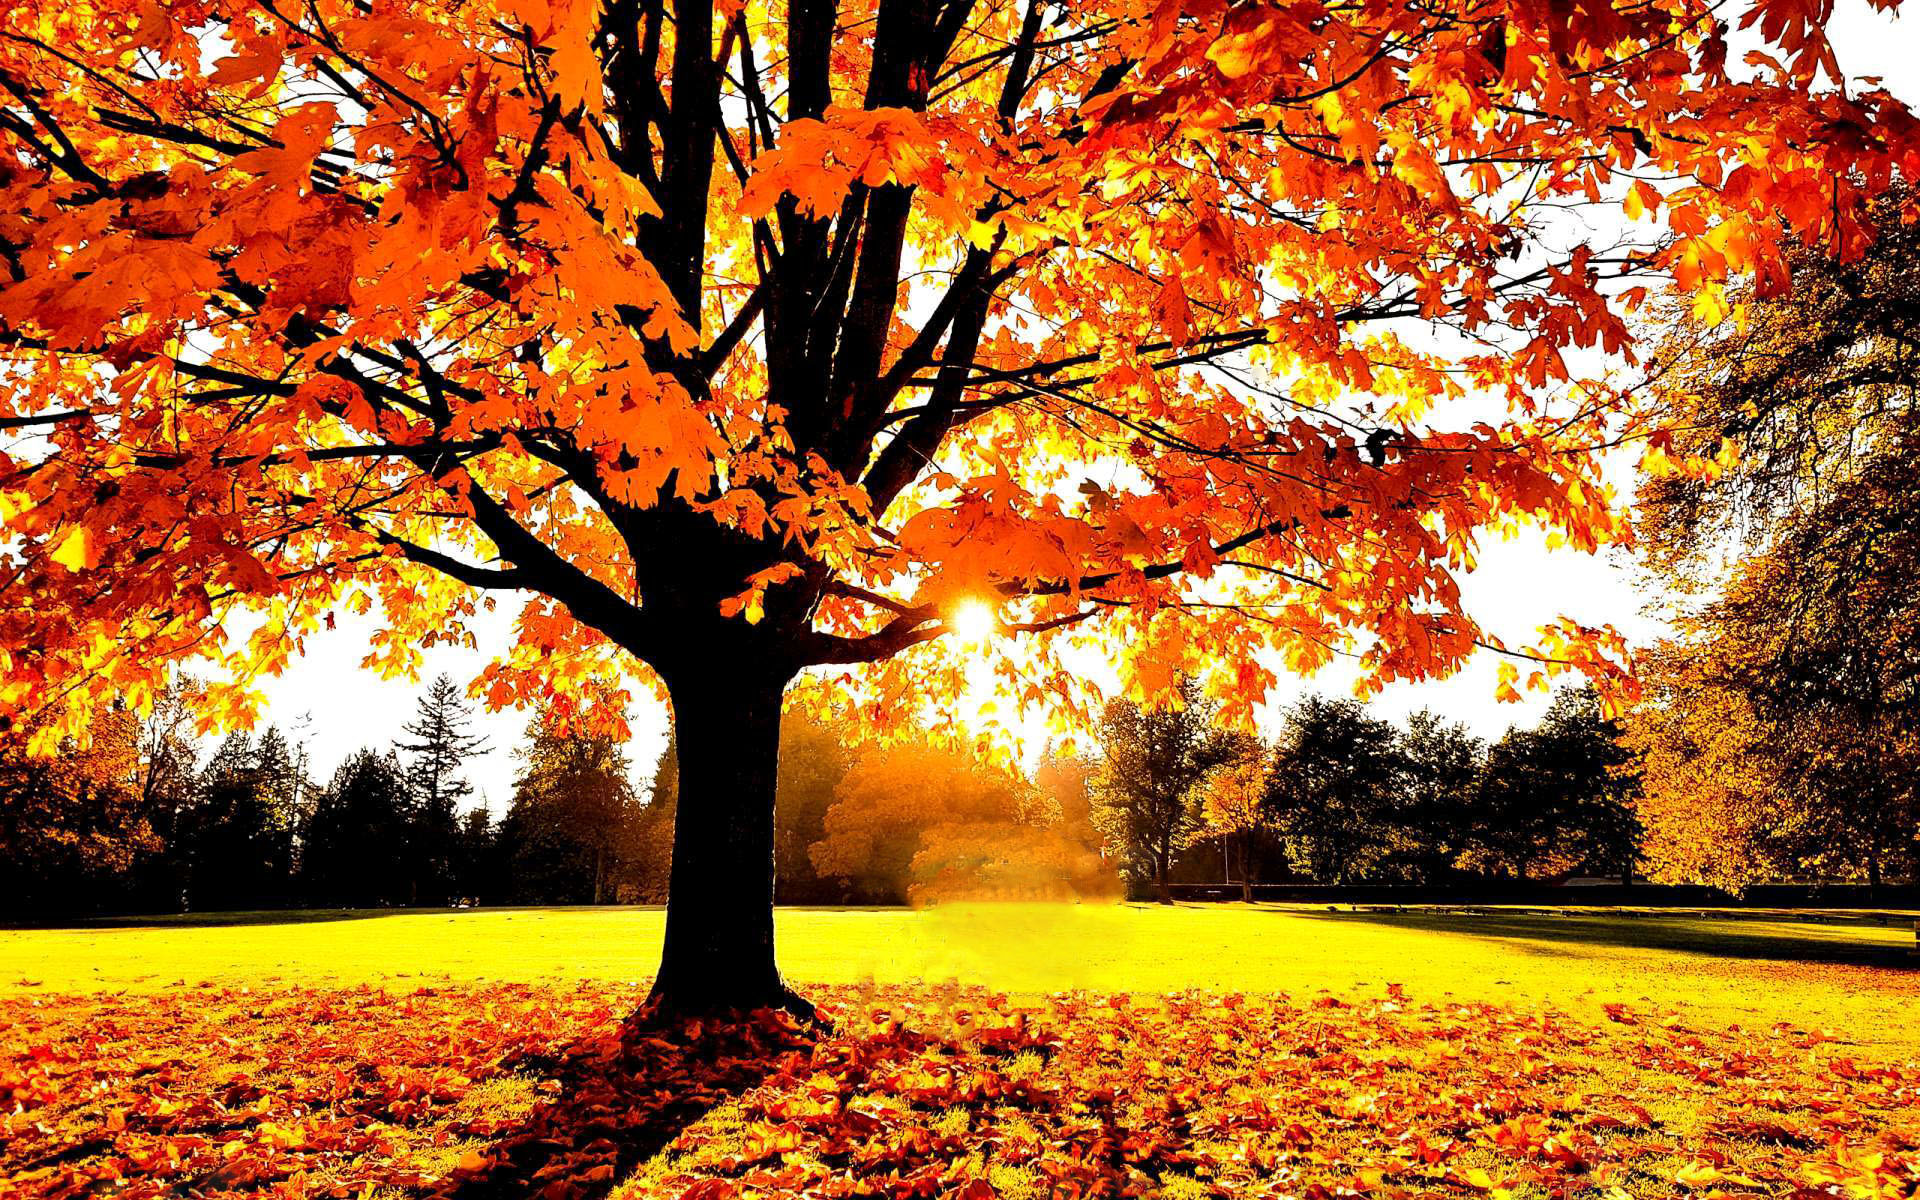 Картинка Осенняя картинка » Осень картинки скачать бесплатно (276 фото) -  Картинки 24 » Картинки 24 - скачать картинки бесплатно